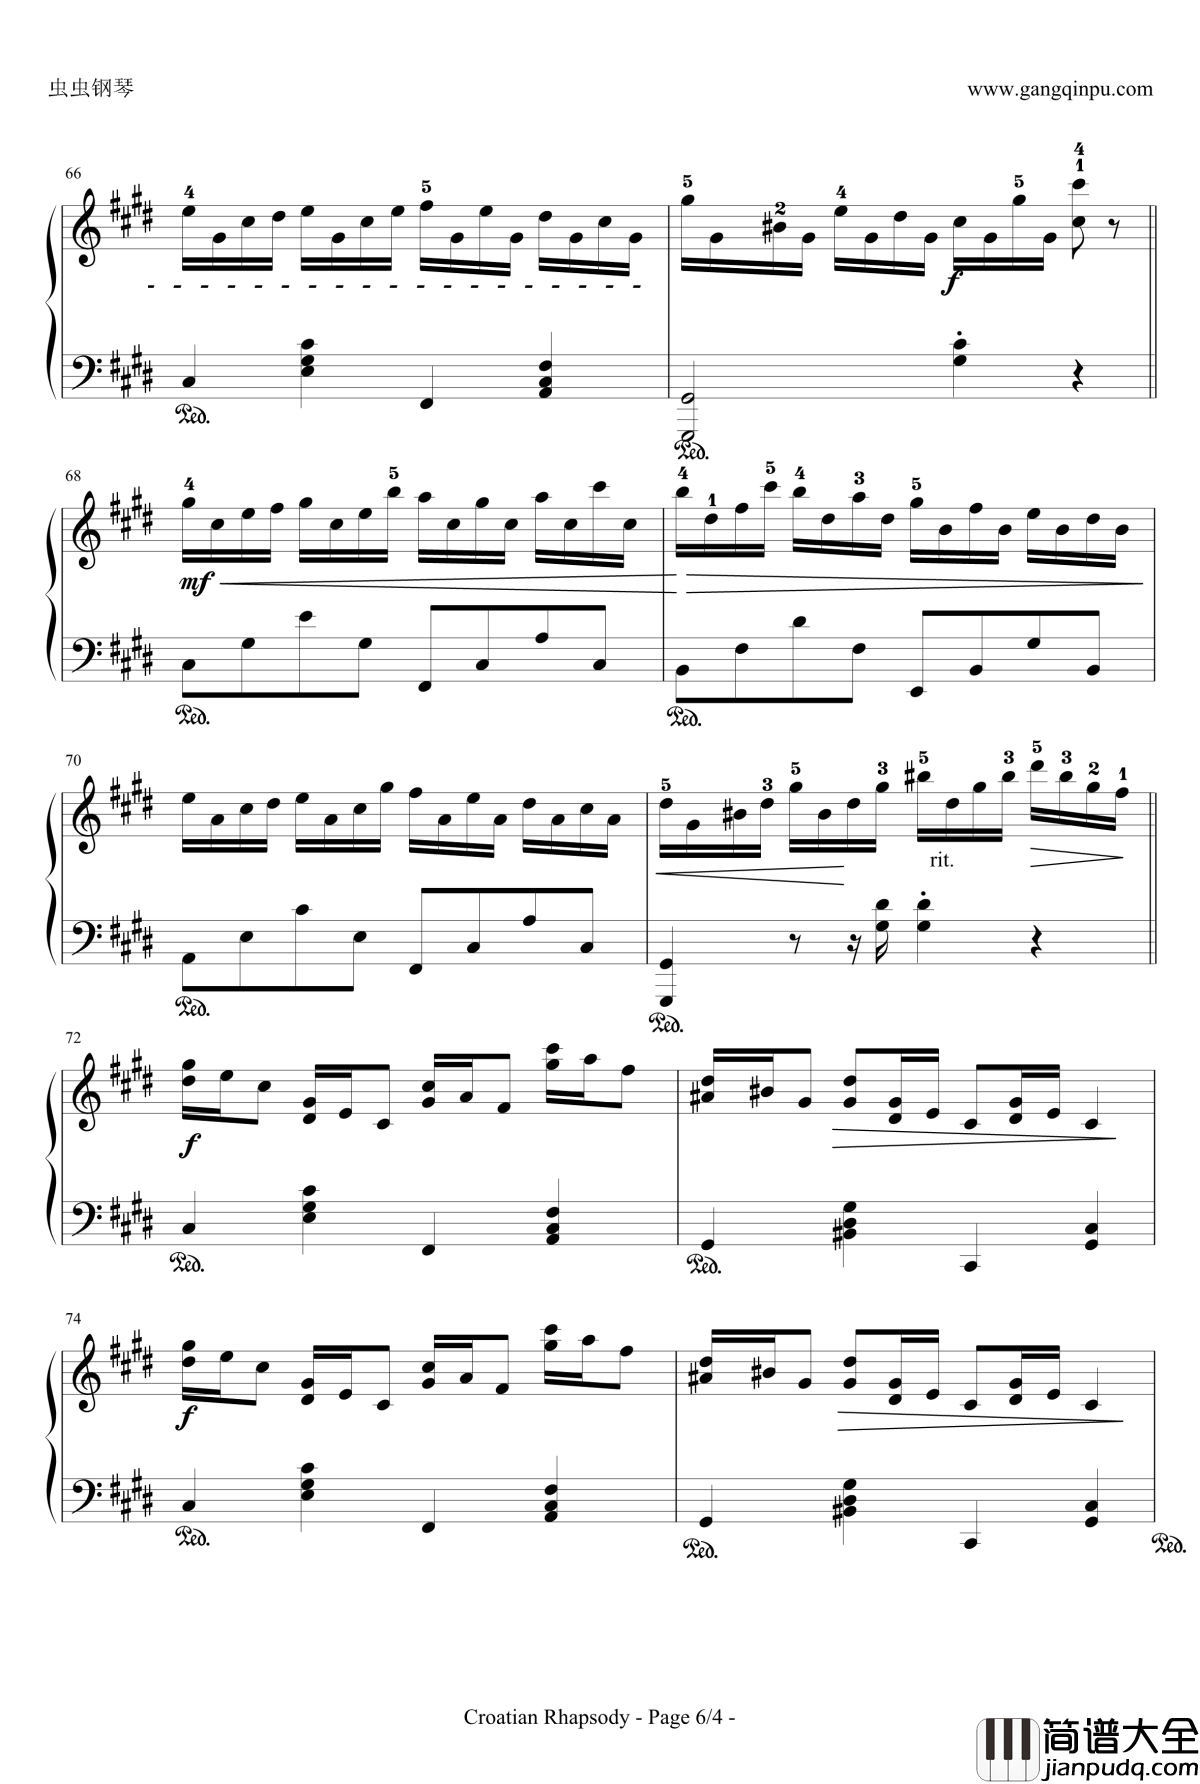 克罗地亚狂想曲钢琴谱_带指法简易版学生最爱_马克西姆_Maksim·Mrvica